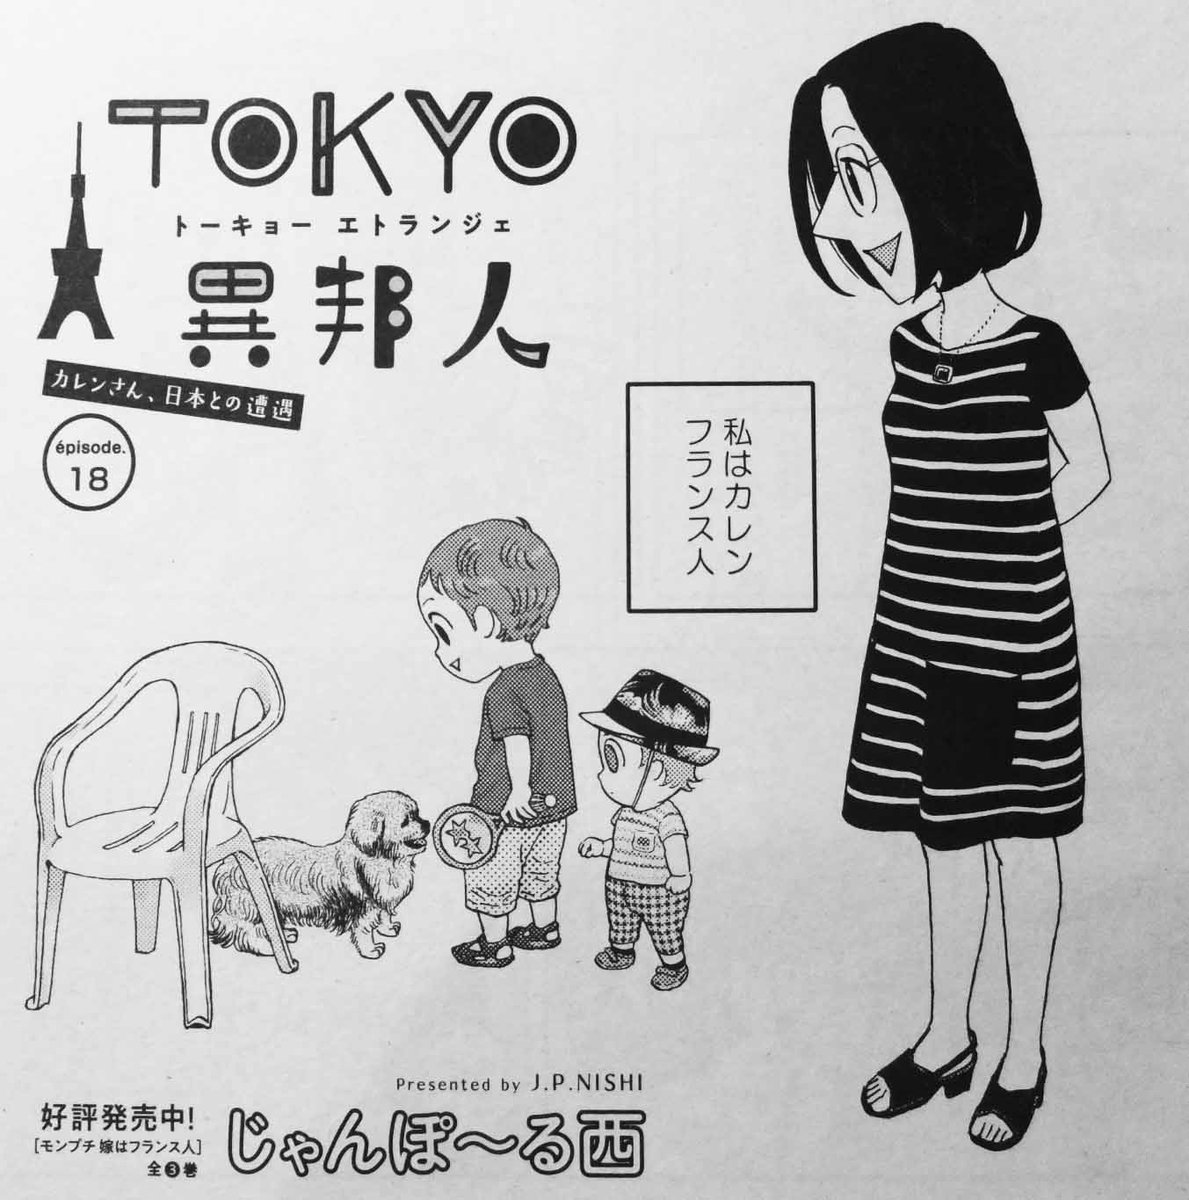 ট ইট র じゃんぽ る西 フィール ヤング T Co M0prvoti2b 8月号発売中 Tokyo異邦人 は2年ぶりにフランスにやってきた日仏家族の珍道中 よろしくお願いします